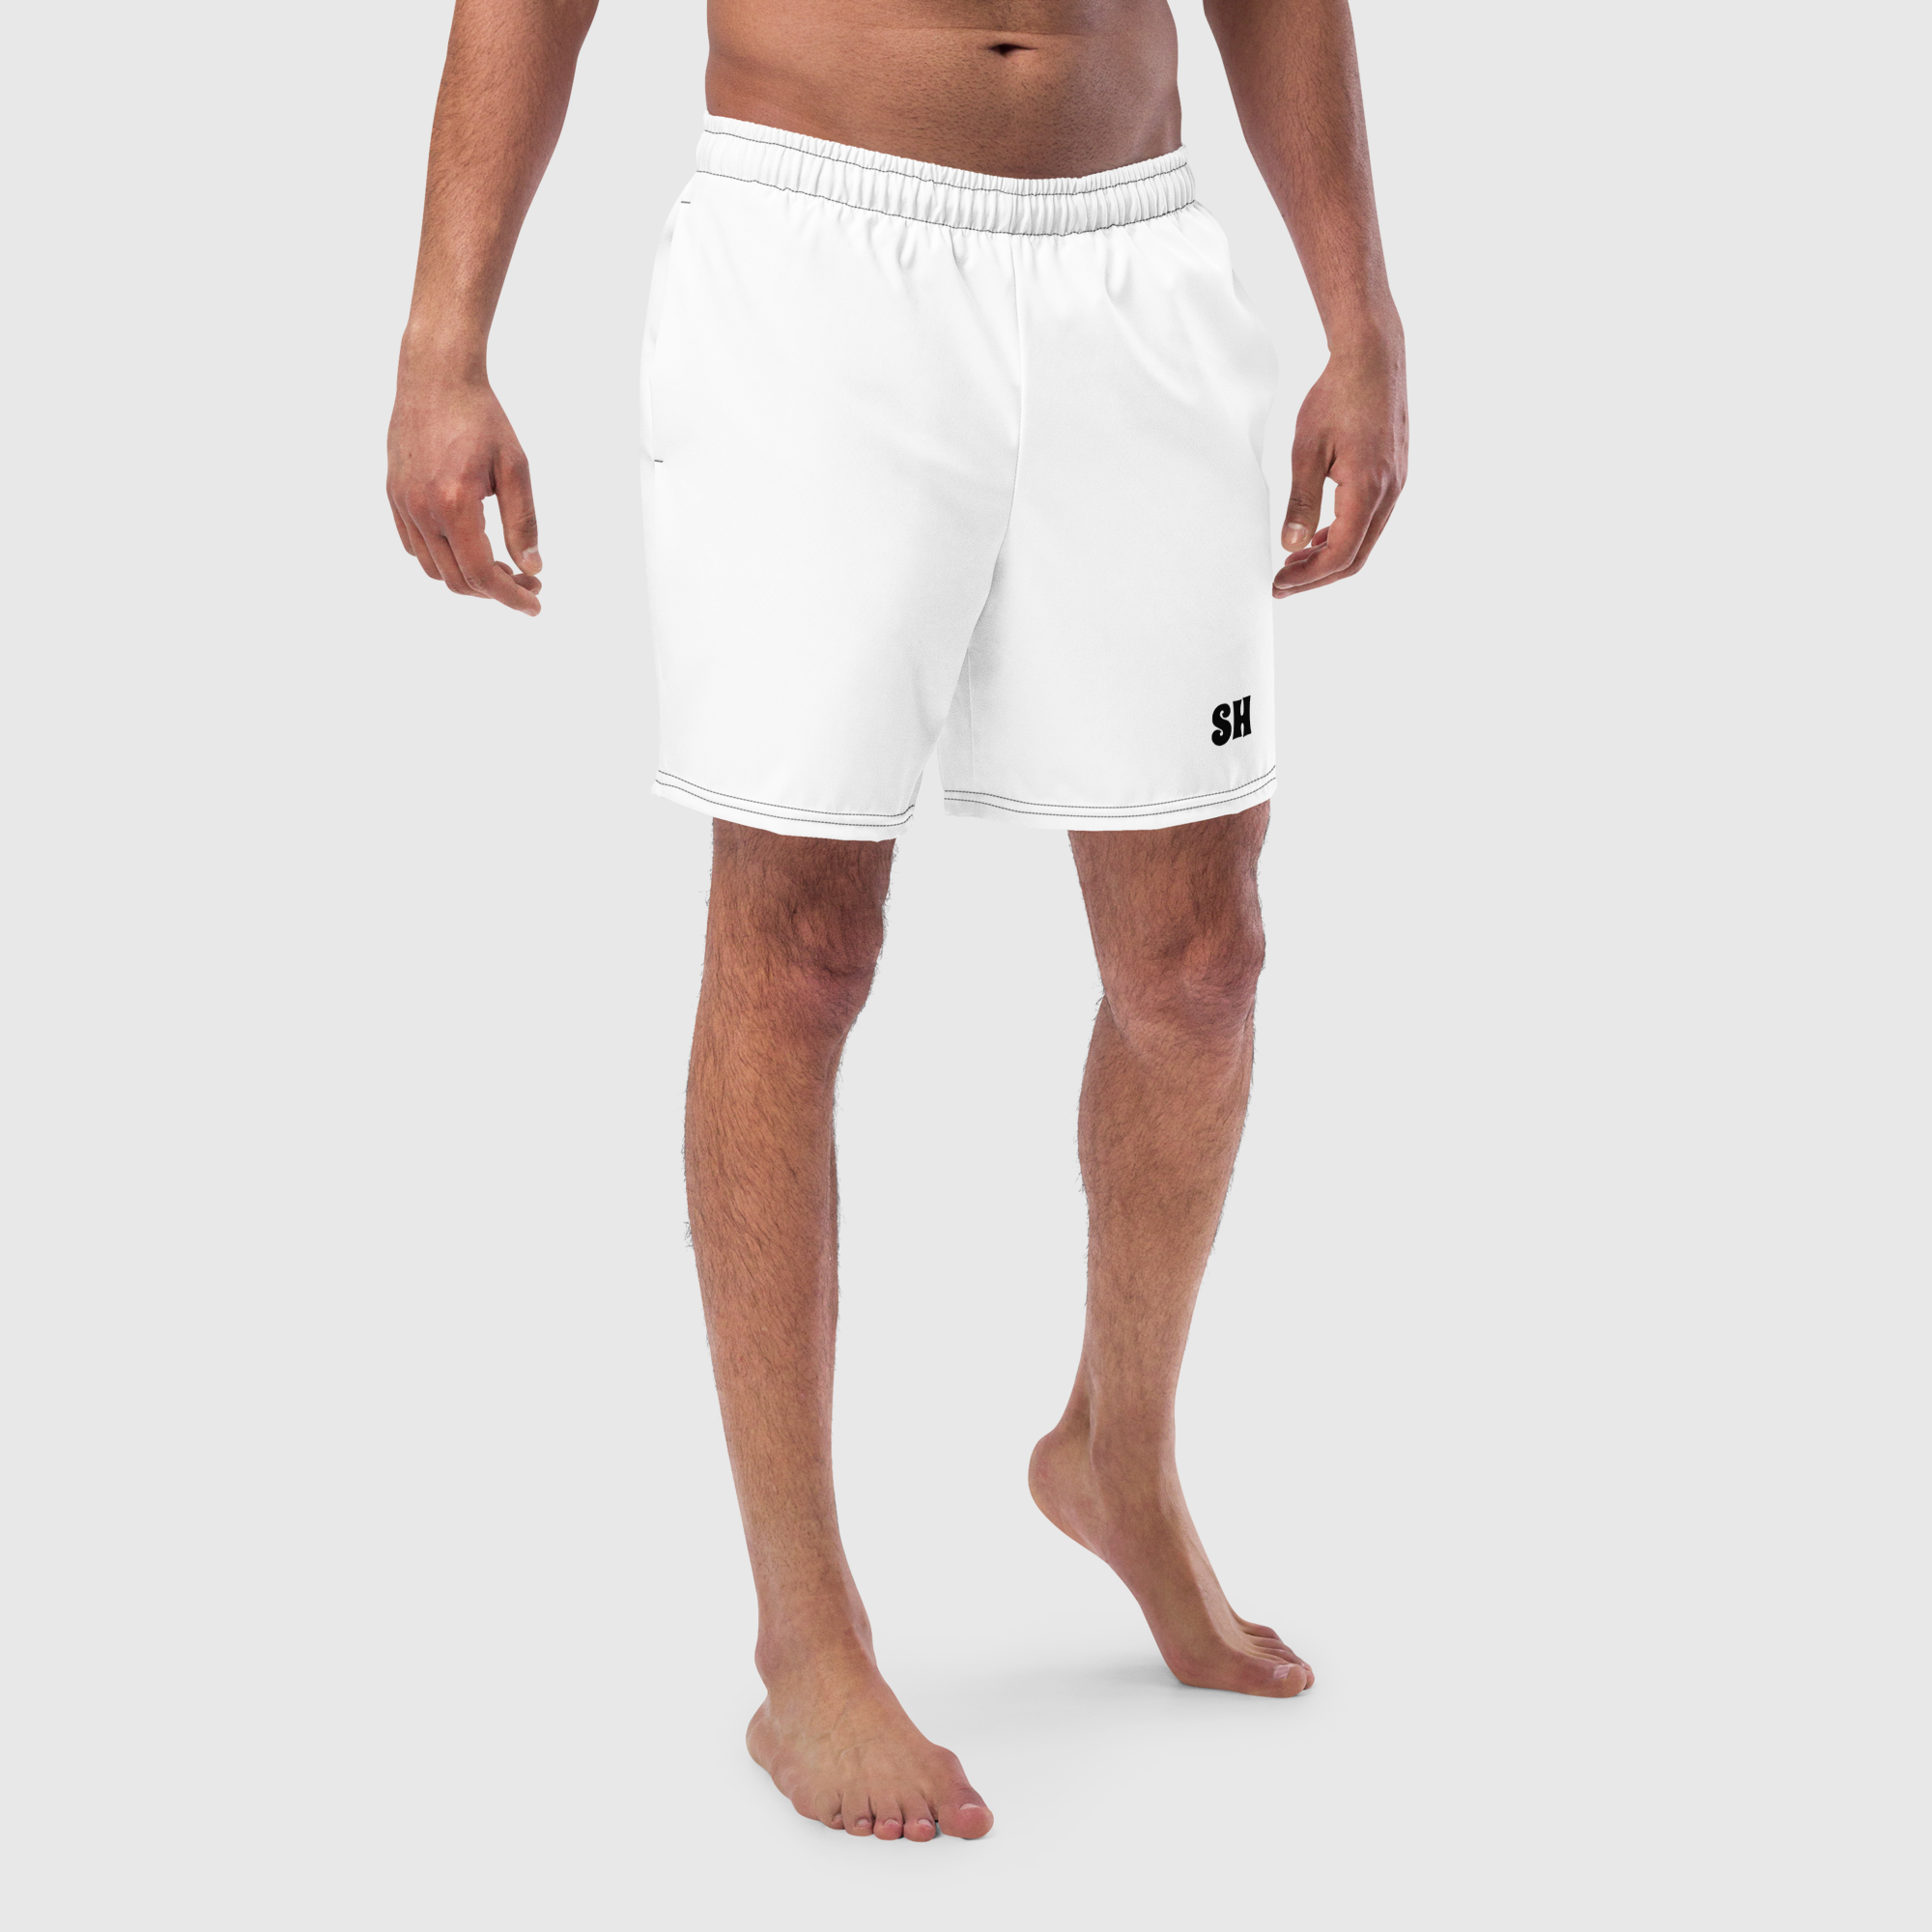 Men's swim trunks - White